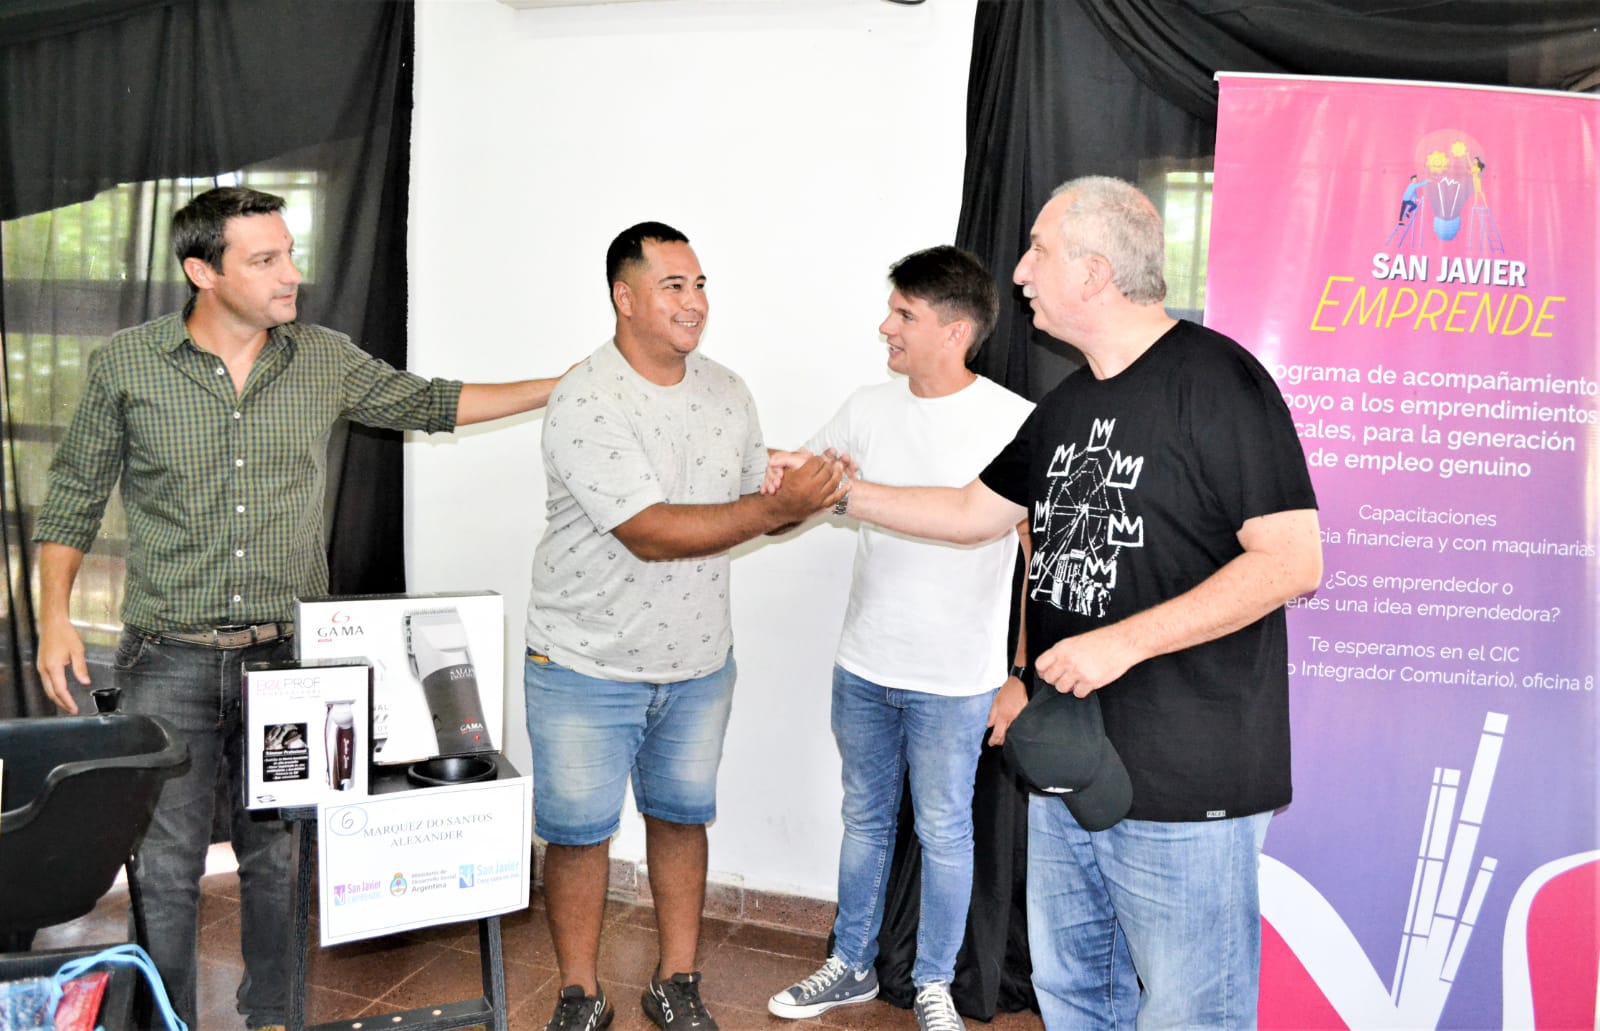 Passalacqua y Romero Spinelli participaron de entrega de herramientas a emprendedores de San Javier imagen-4